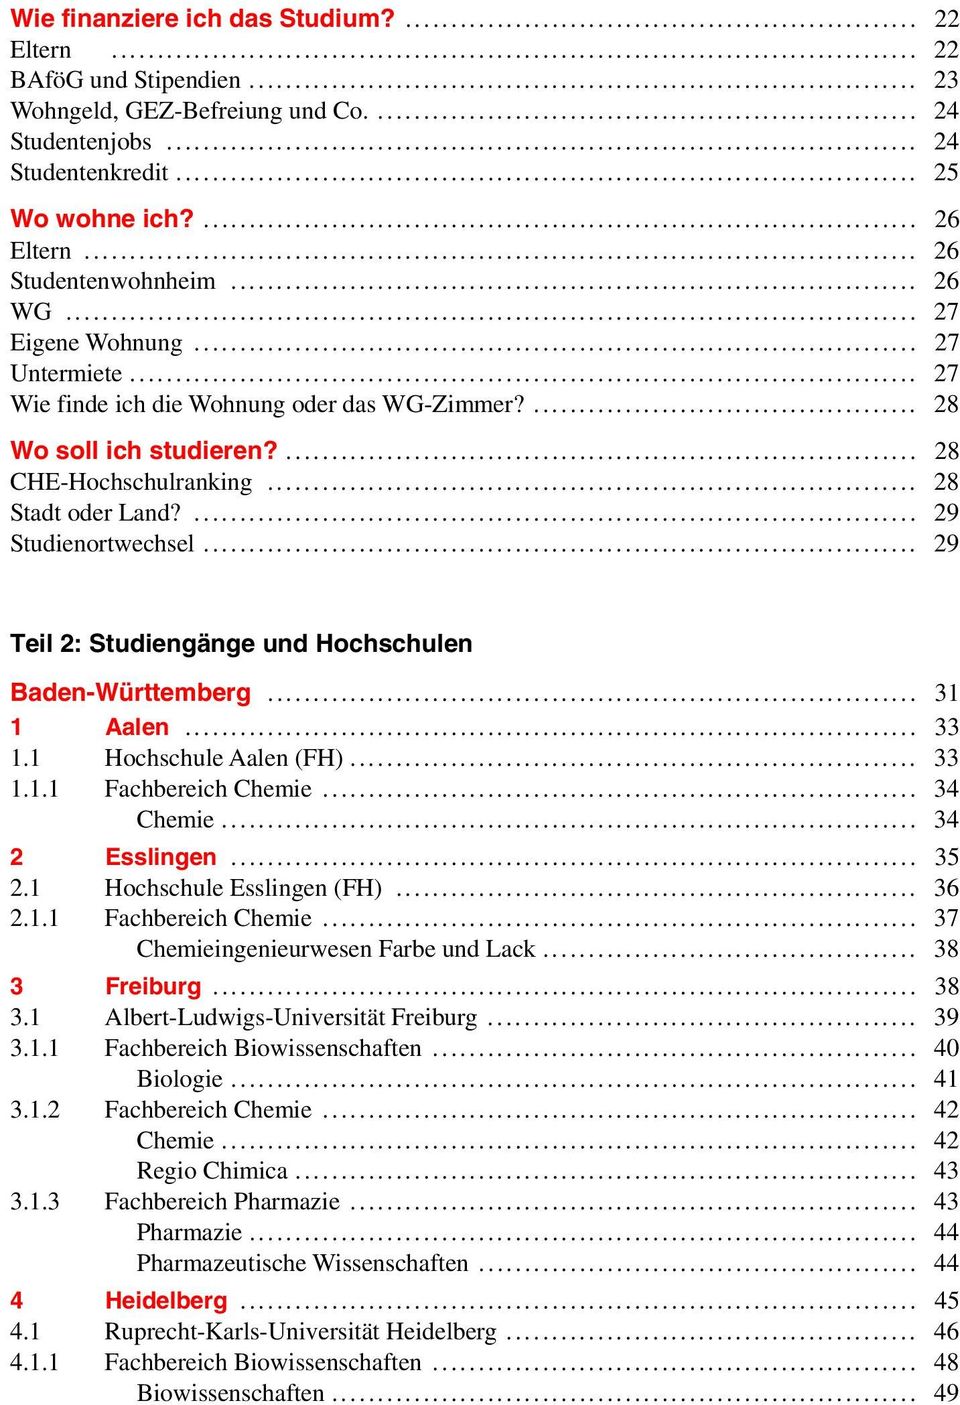 ... 29 Studienortwechsel... 29 Teil 2: Studiengänge und Hochschulen Baden-Württemberg... 31 1 Aalen... 33 1.1 Hochschule Aalen (FH)... 33 1.1.1 Fachbereich Chemie... 34 Chemie... 34 2 Esslingen... 35 2.